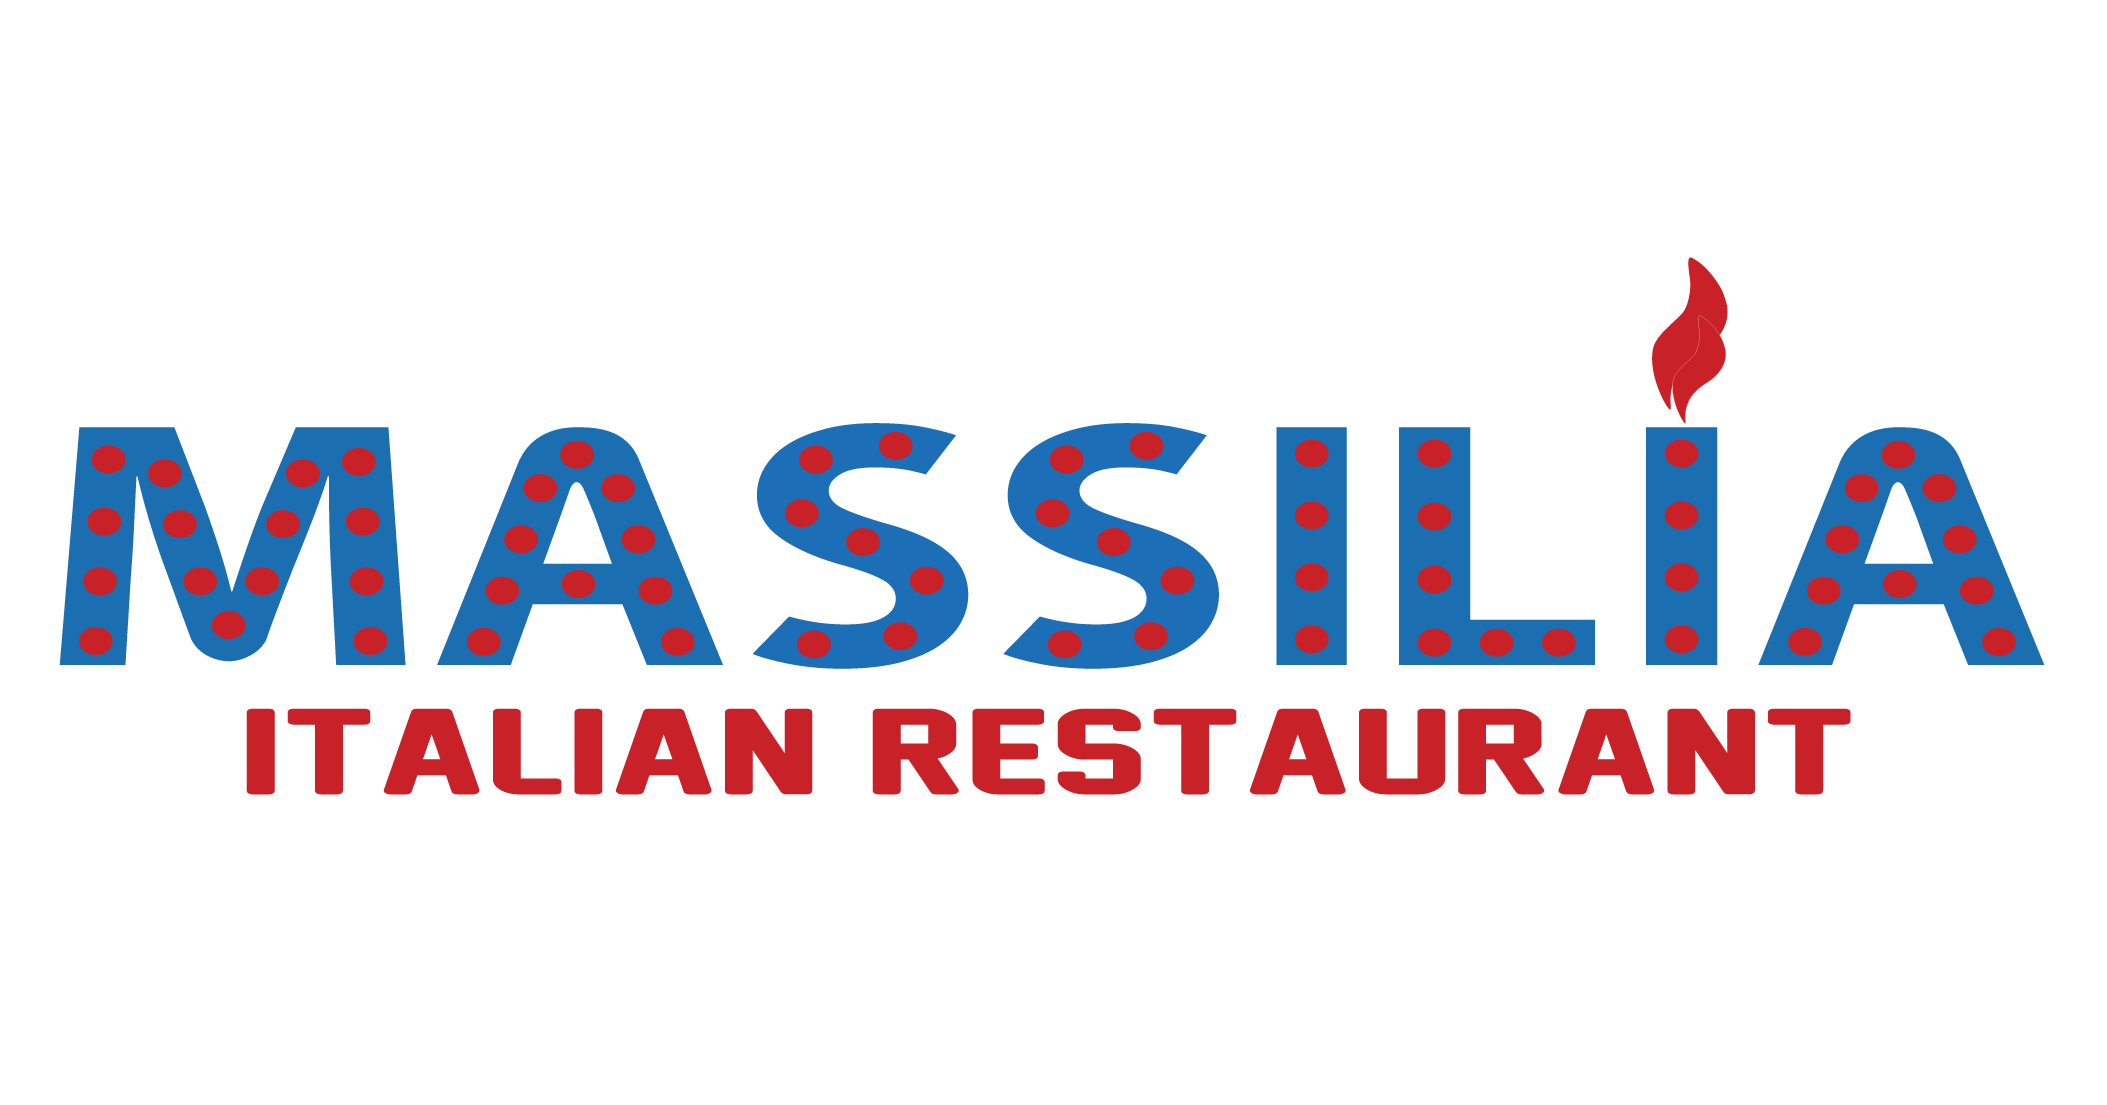 Logo Massilia